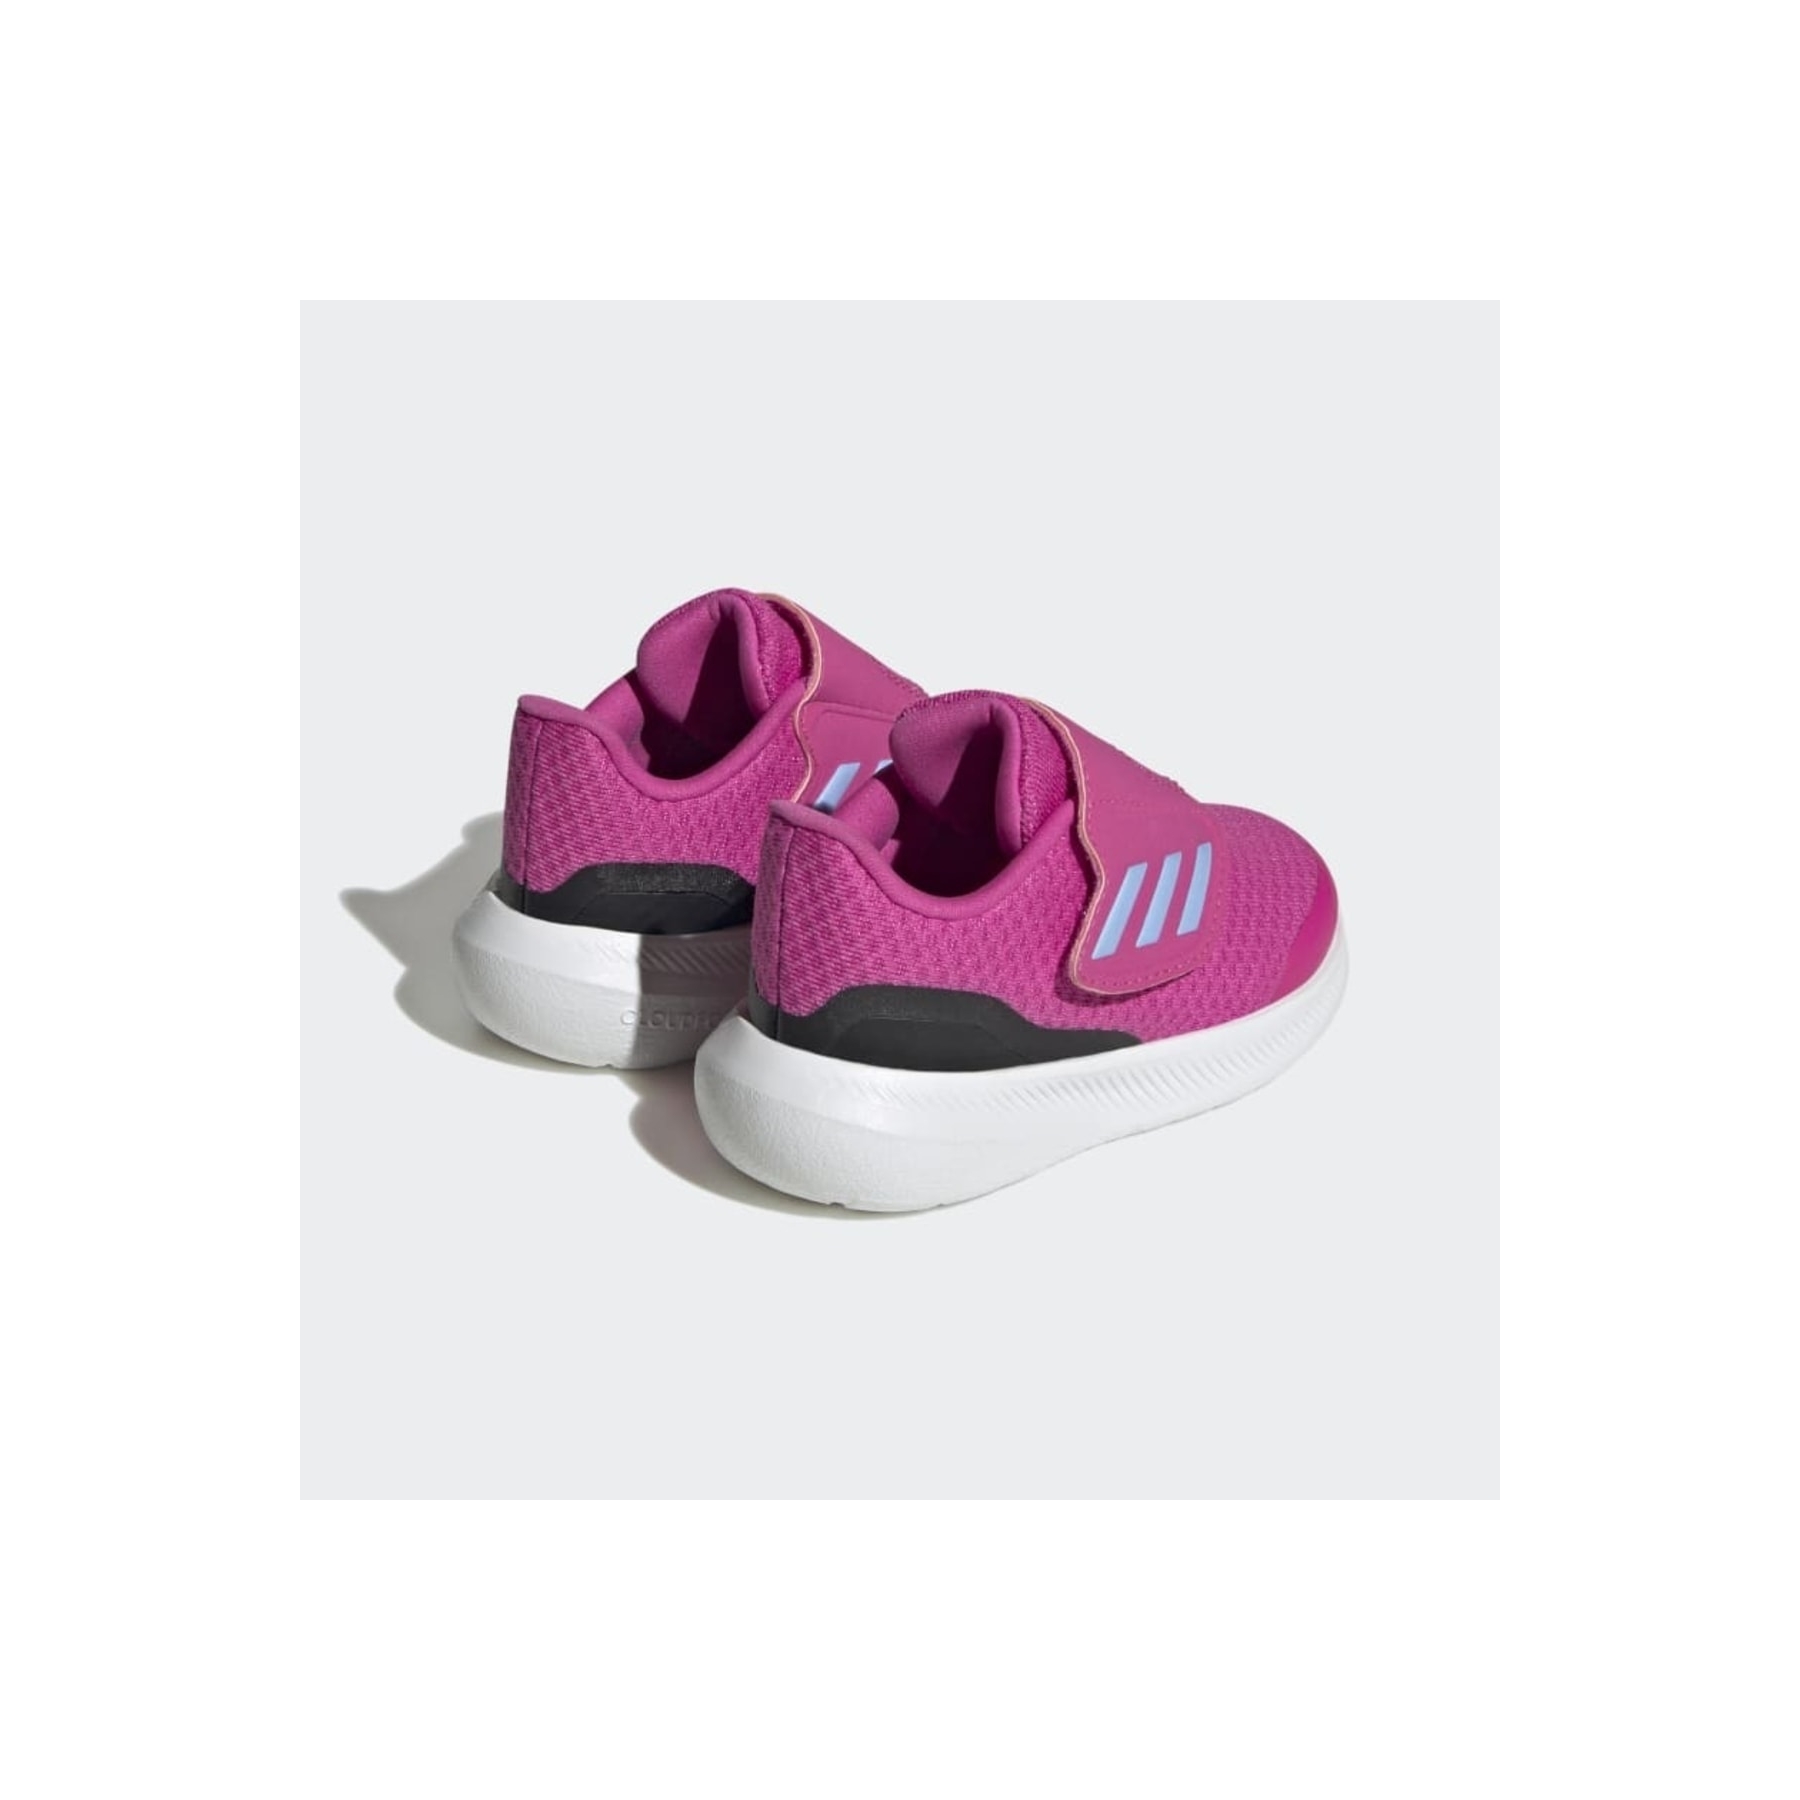 adidas Runfalcon 3.0 Ac Çocuk Pembe Koşu Ayakkabısı (HP5860)